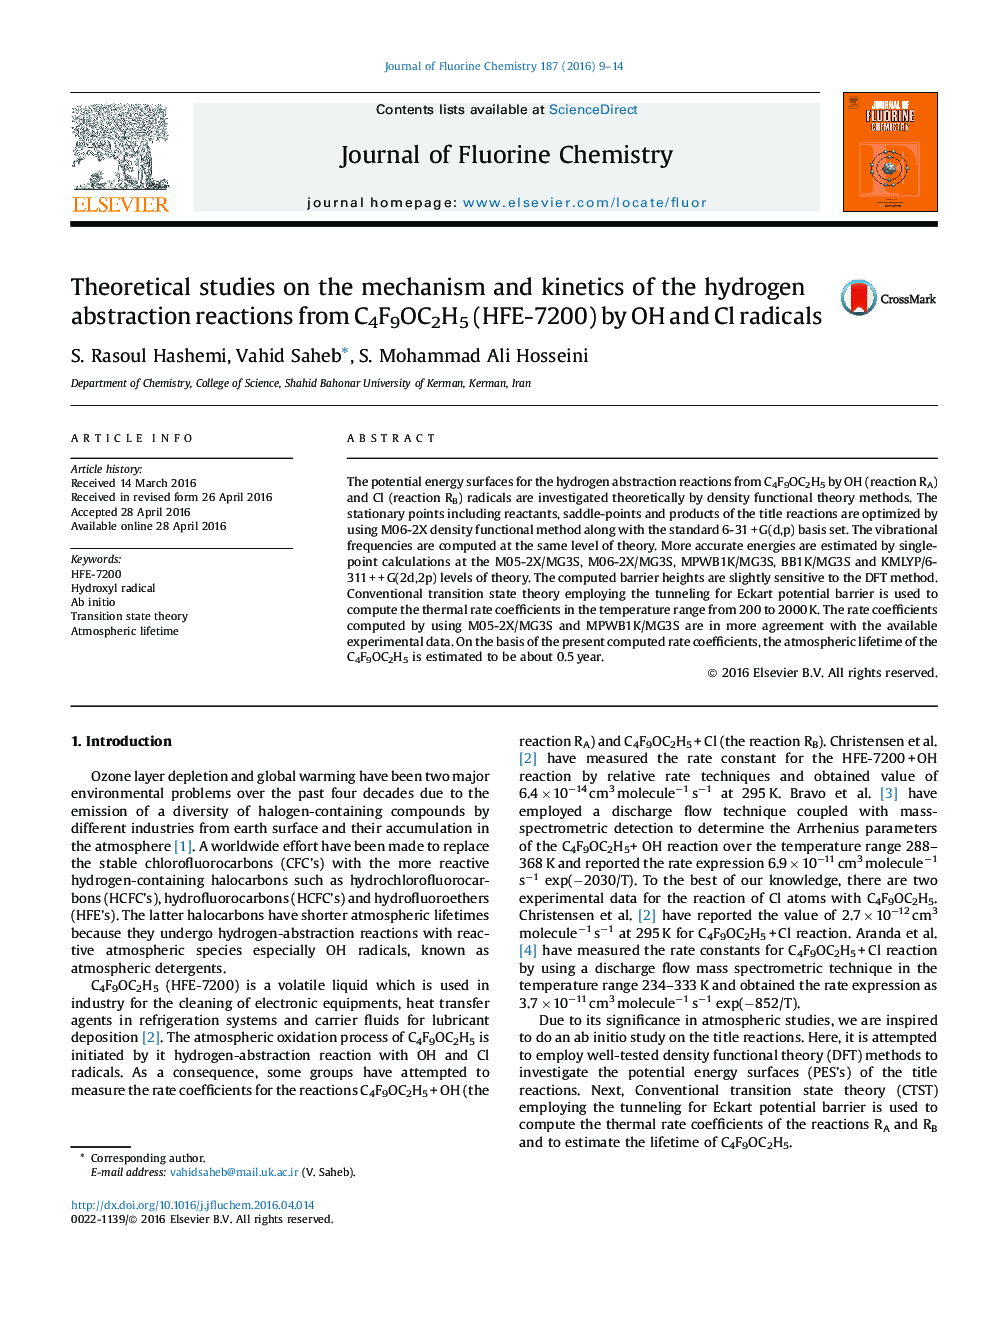 مطالعات نظری بر روی مکانیسم و سینتیک از واکنش های انتزاعی هیدروژن از C4F9OC2H5 (HFE-7200) توسط رادیکال های OH و کلر